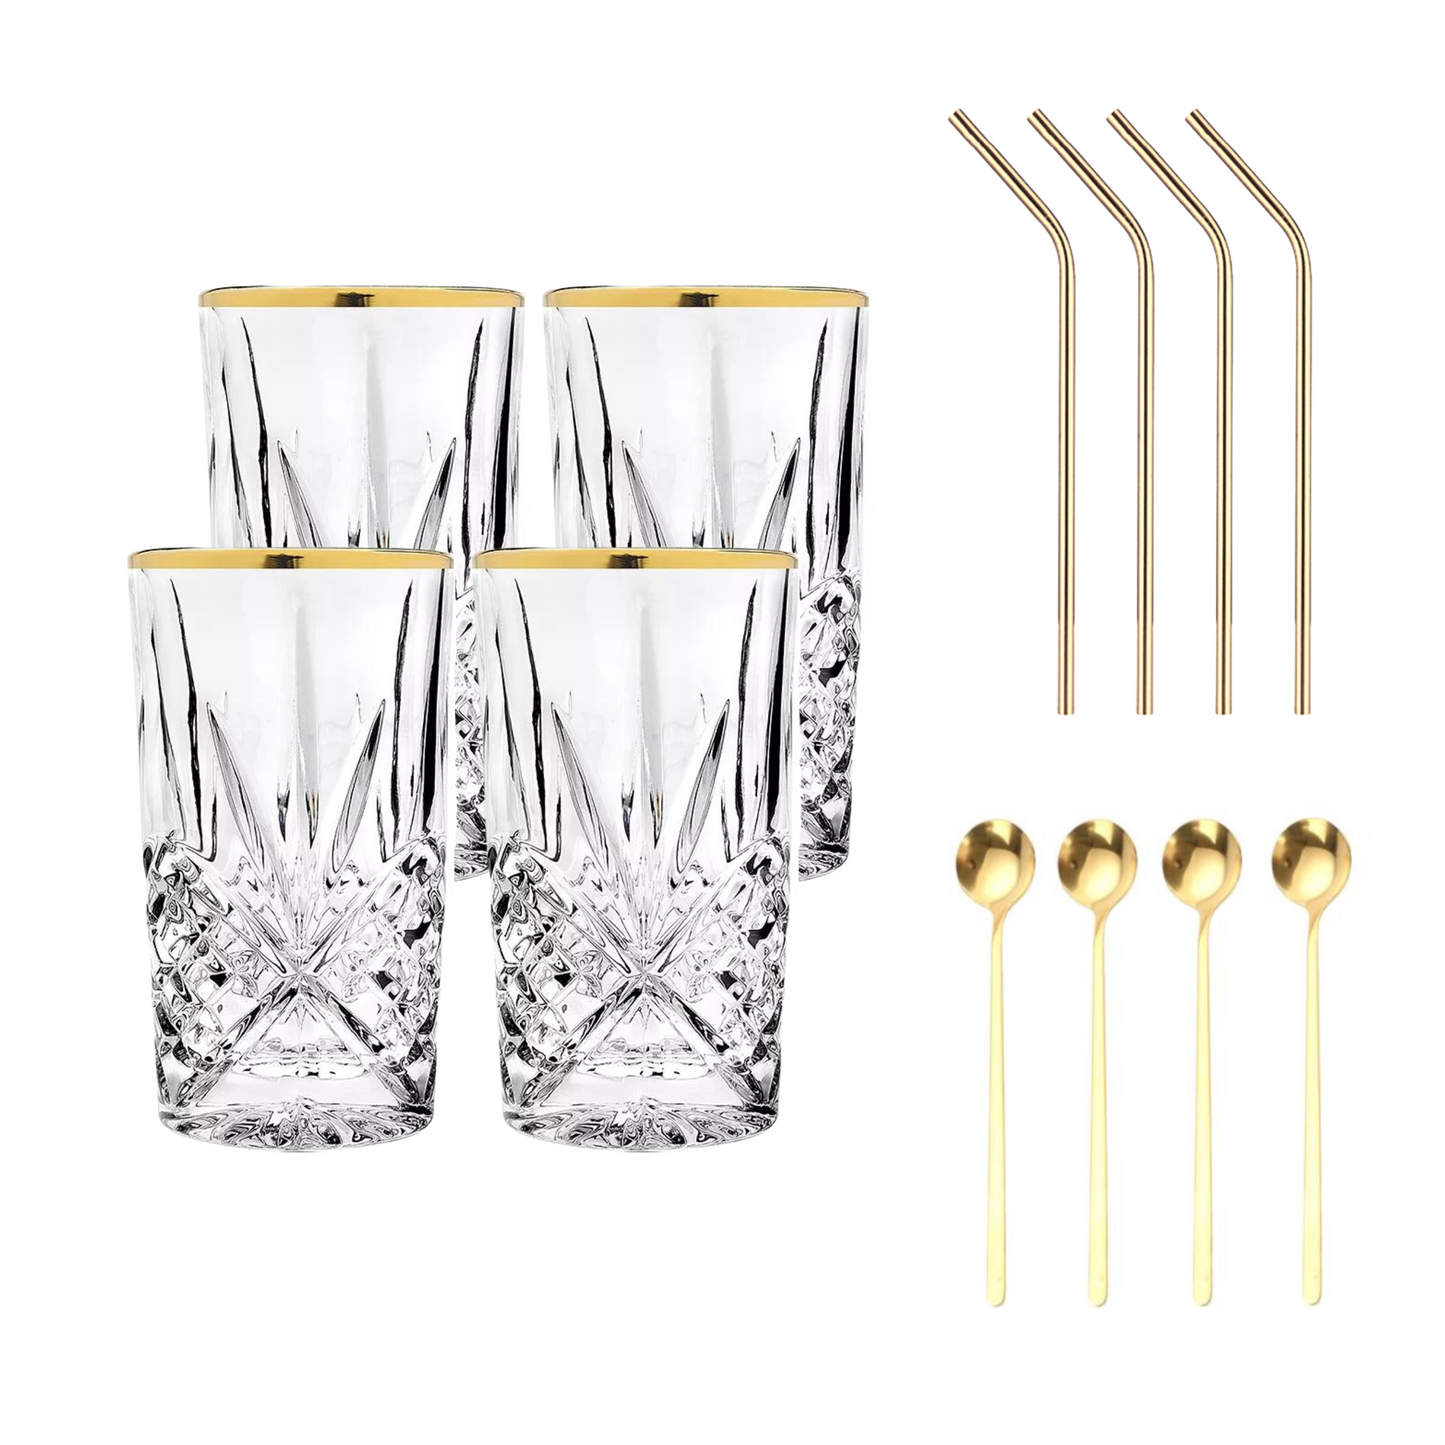 Set Luxus Kristall Latte Macchiato Gläser mit Goldrand 350ml Trinkgläser 4er Set "Star" mit goldenen Latte Macchiato Löffeln und goldenen Strohhalmen aus Edelstahl